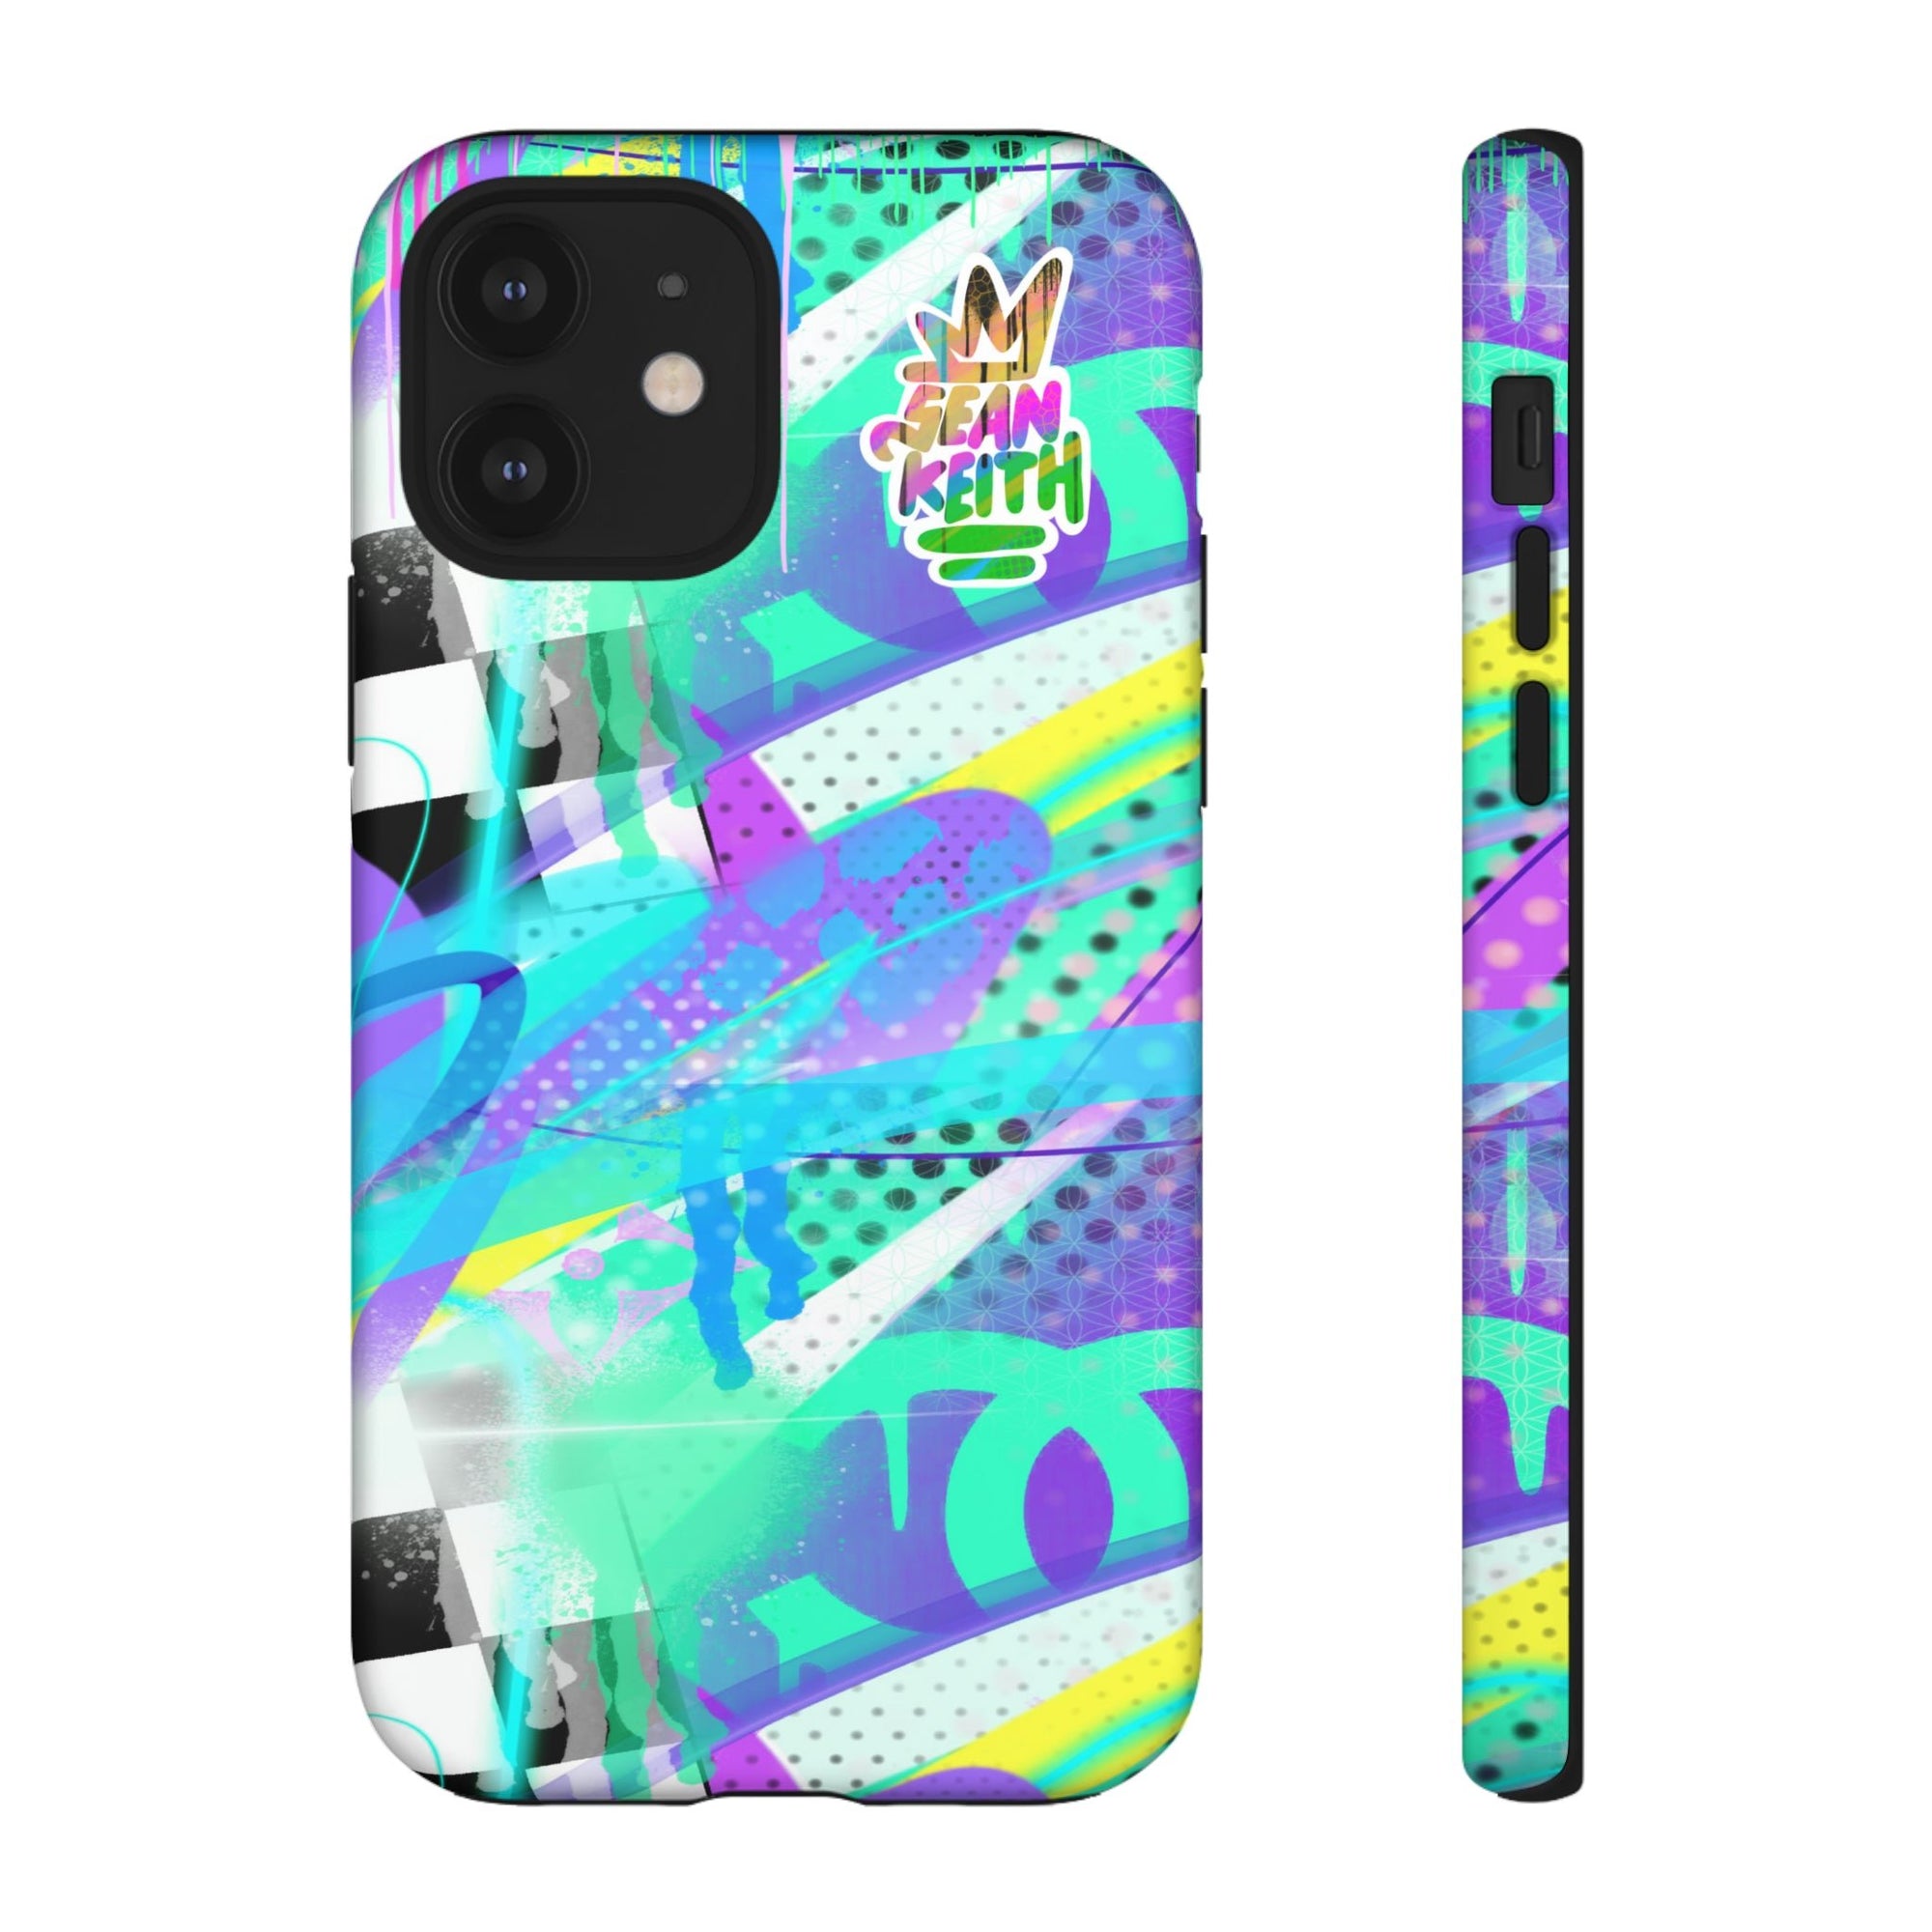 Sean Keith custom Iphone Case - Sean Keith Art